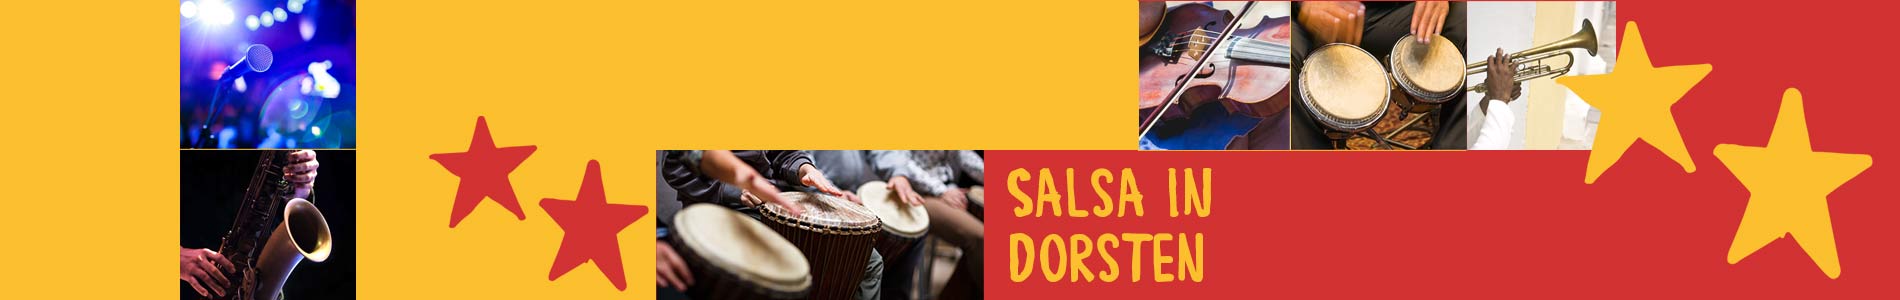 Salsa in Dorsten – Salsa lernen und tanzen, Tanzkurse, Partys, Veranstaltungen